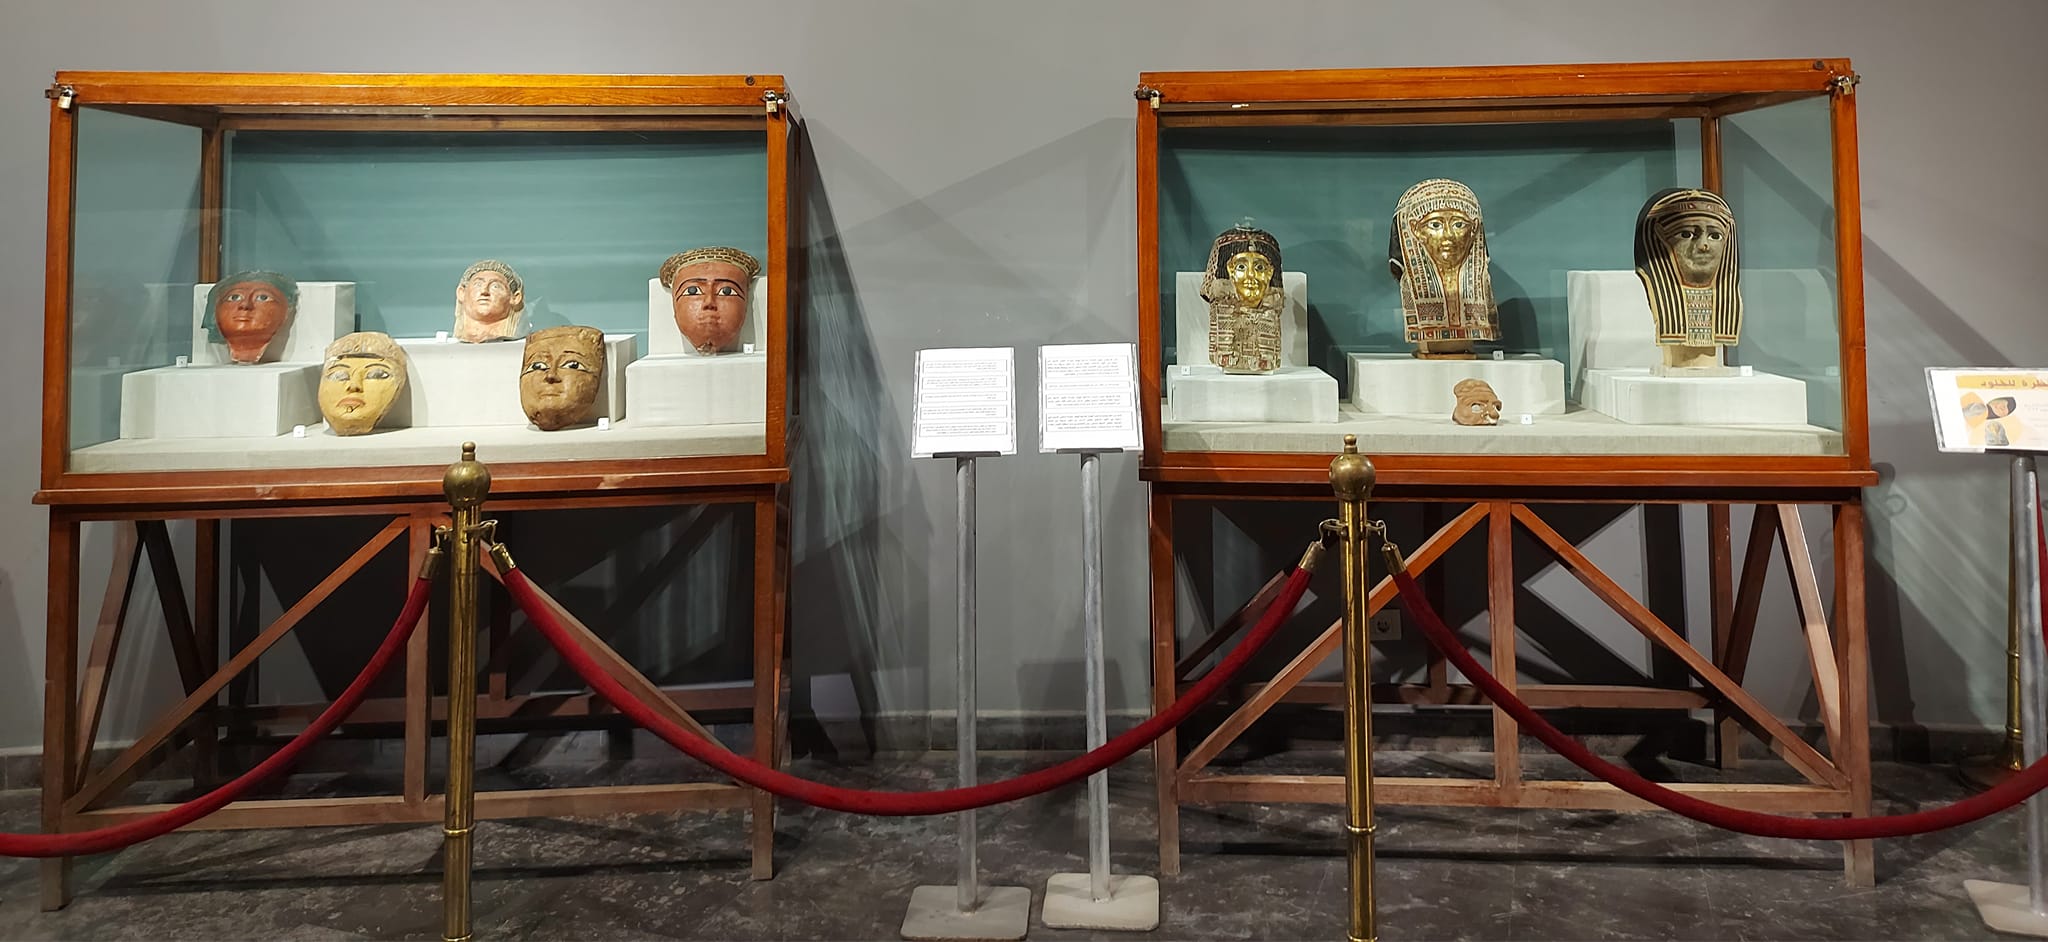 معرض مؤقت بعنوان نظرة للخلود احتفالاً بمرور 3 سنوات على افتتاح متحف كفر الشيخ